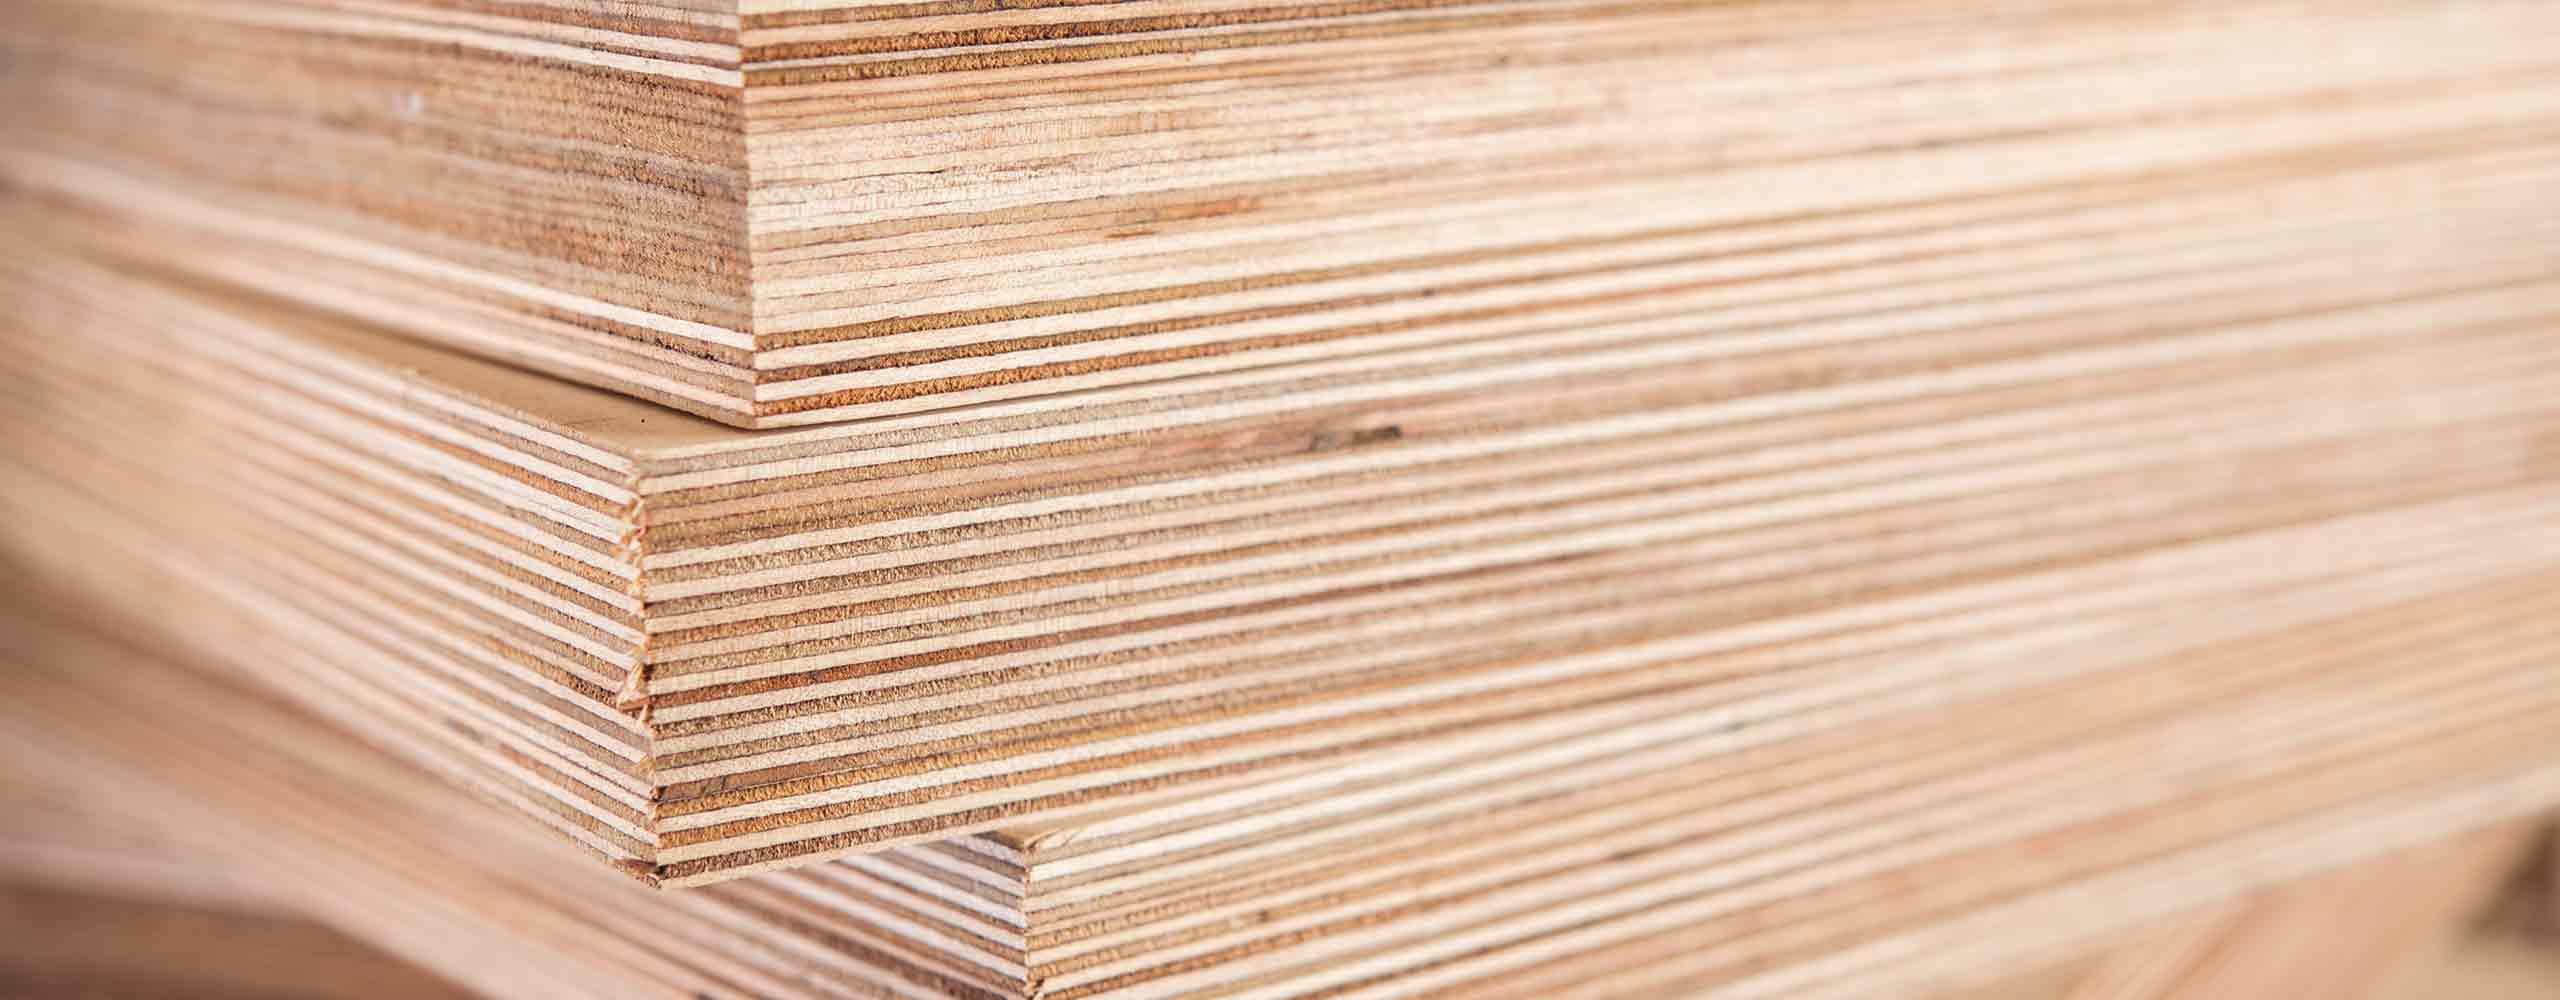  Soluzioni per legno e materiali a base di legno